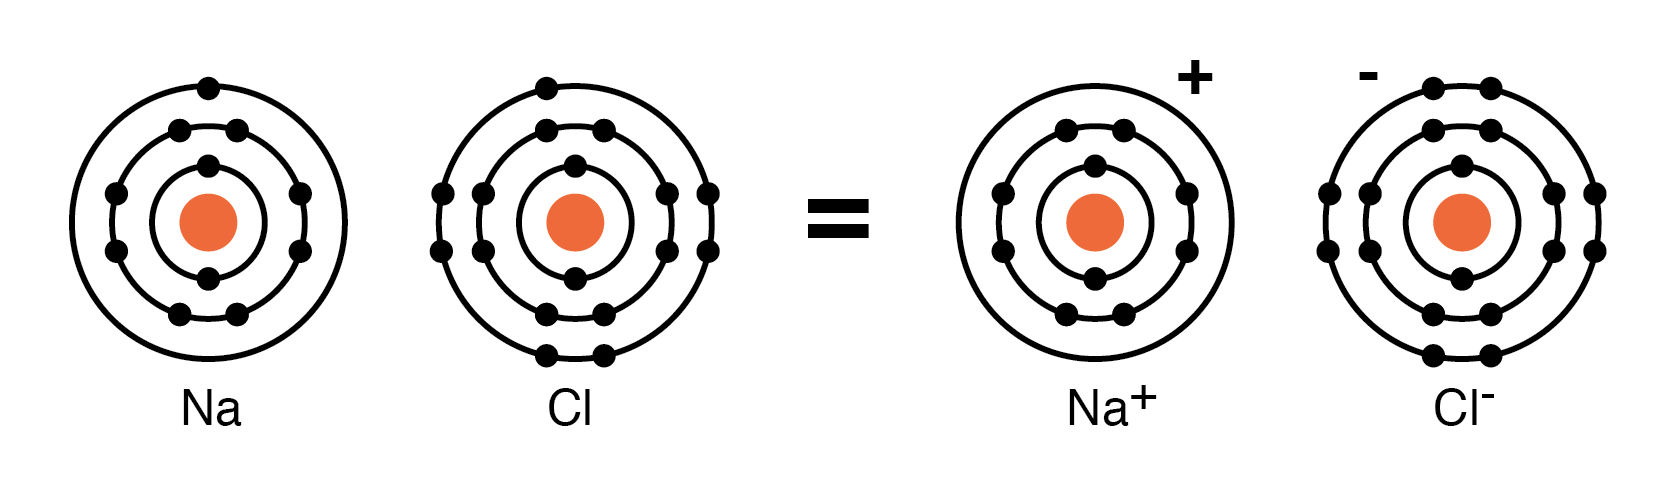 Атом натрия. Атом натрия рисунок. Модель атома хлора. Атом серы рисунок.